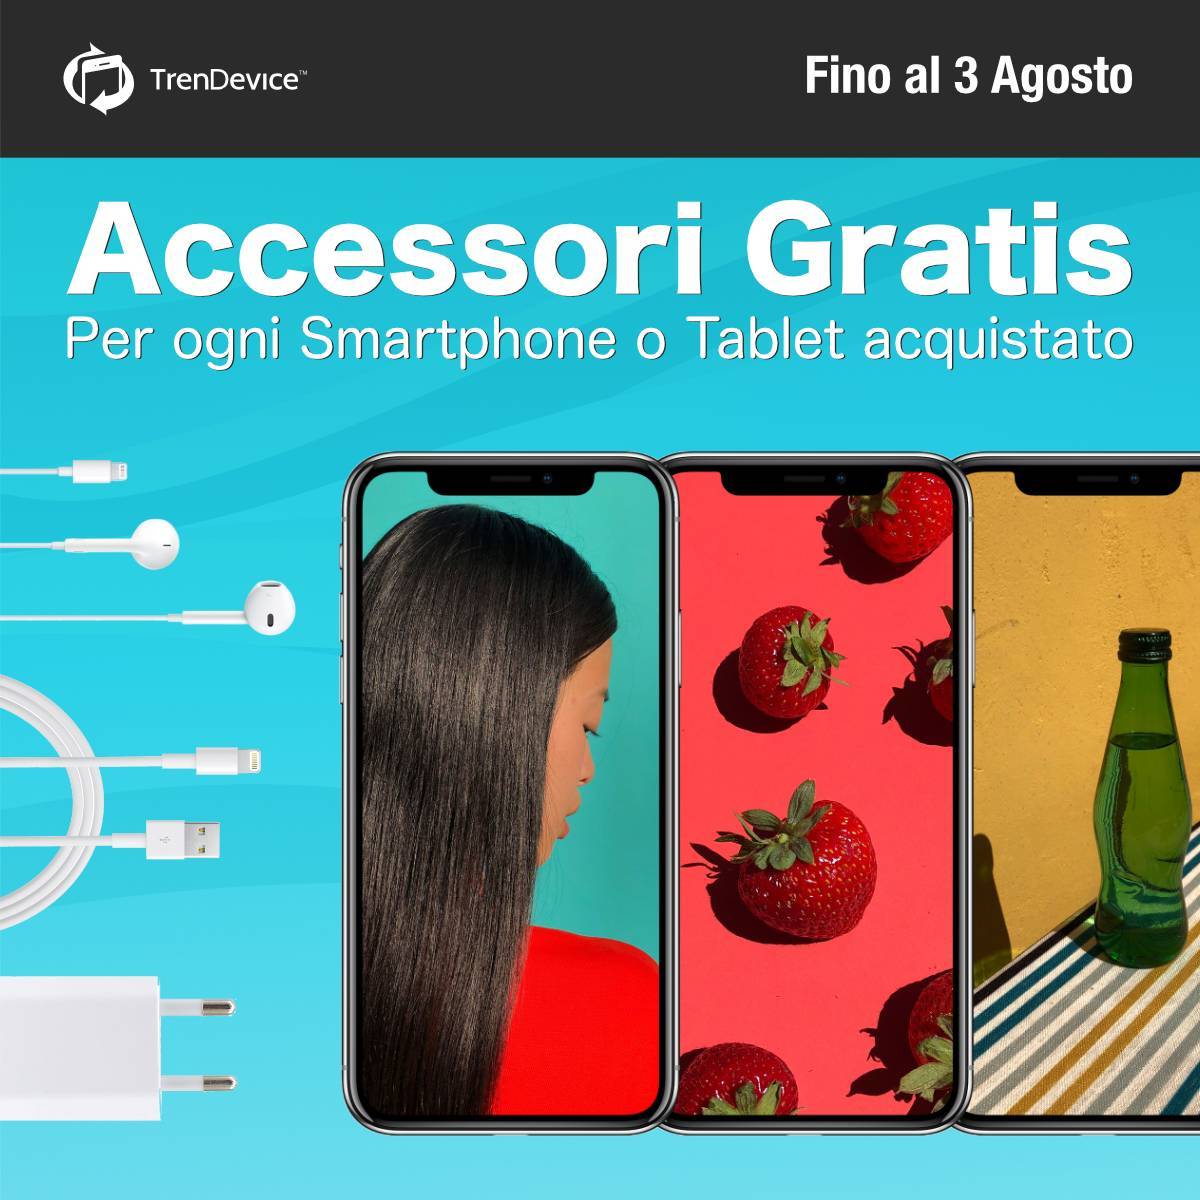 Accessori Gratis su TrenDevice: per ogni smartphone o tablet acquistato, in omaggio gli auricolari, il cavo e l’alimentatore. Fino al 3 Agosto. 1